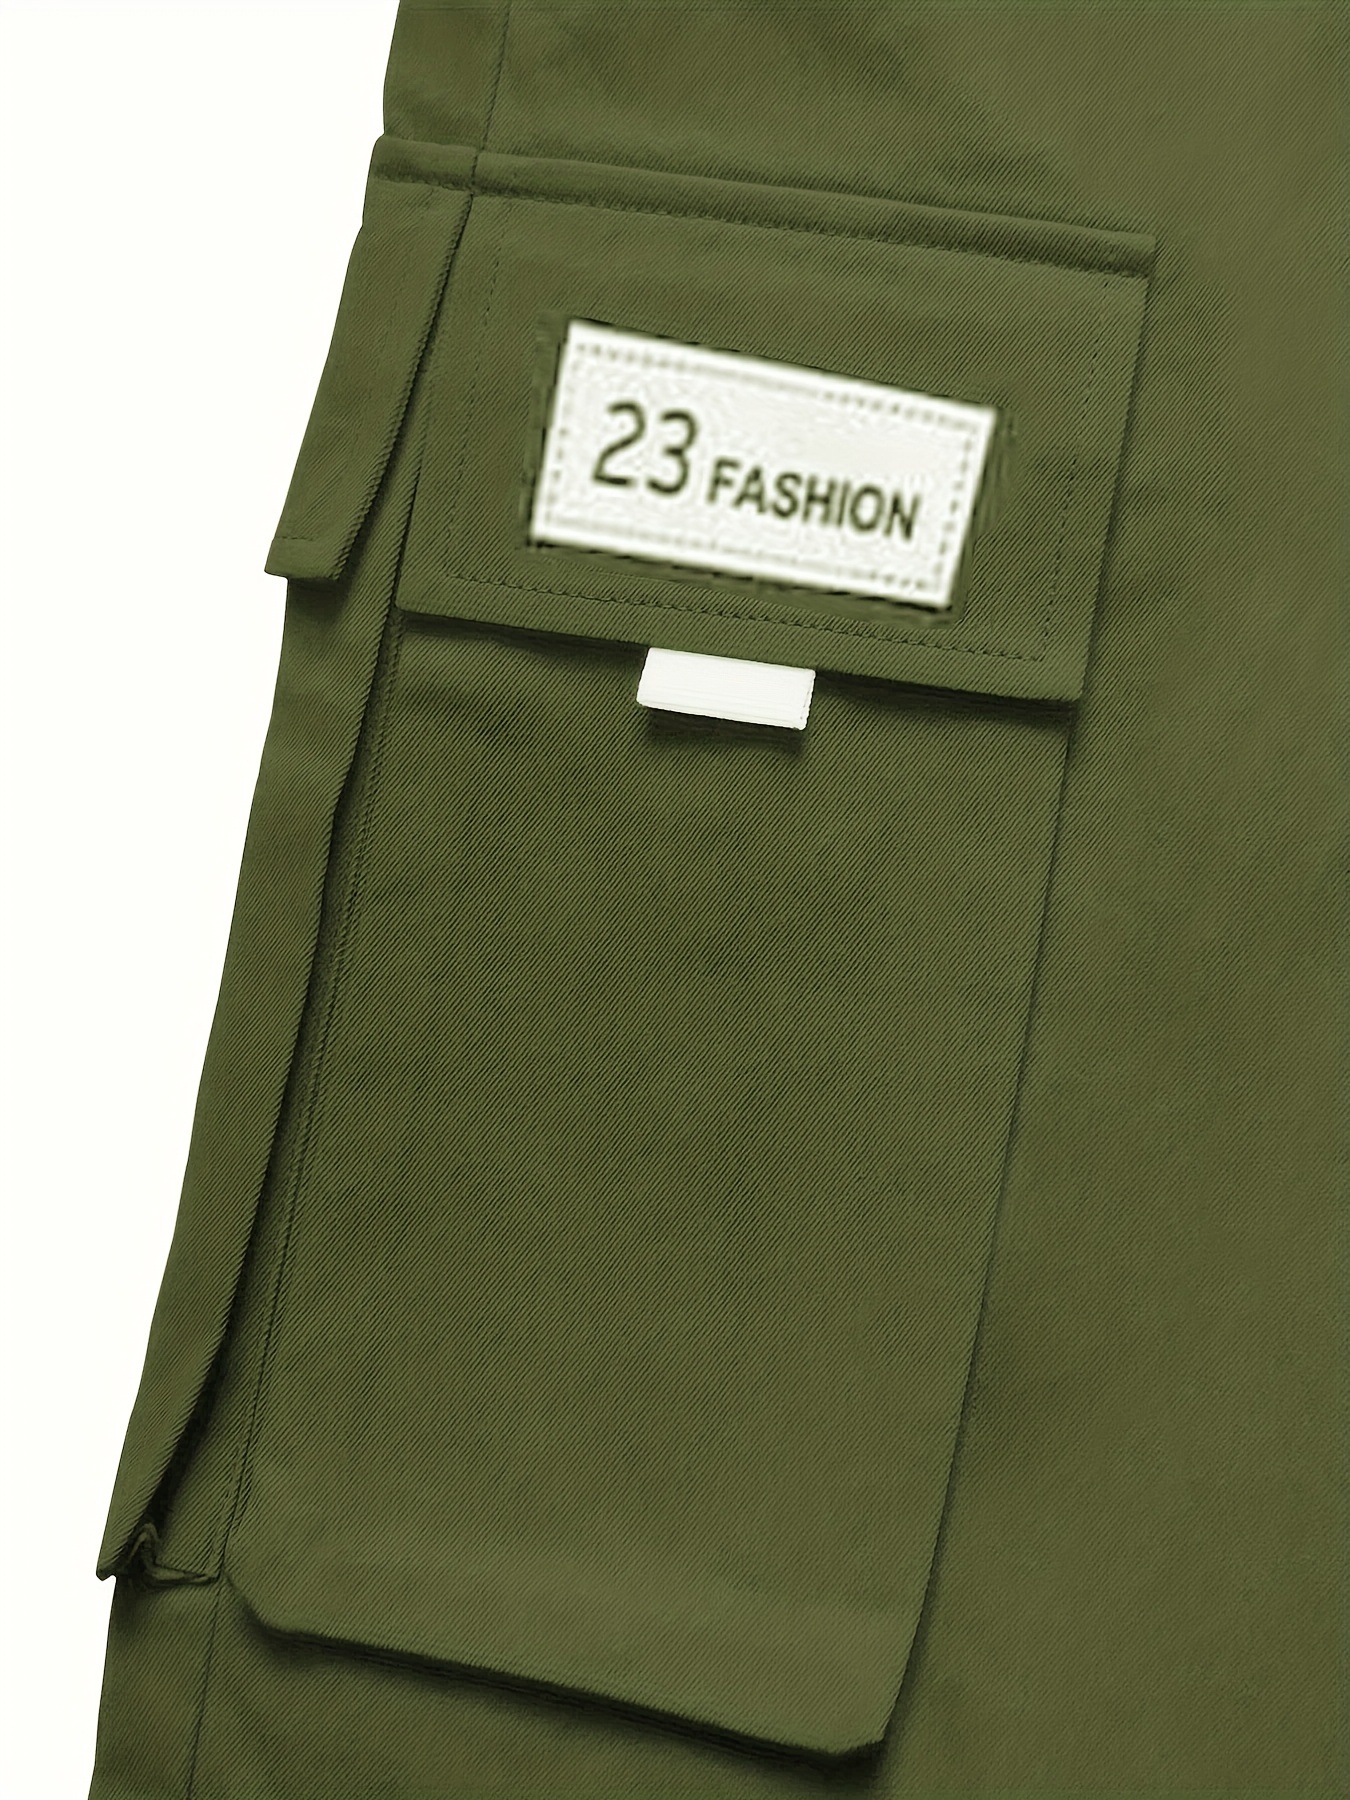 Plus Size Pantalones De Impresión Scout Para Hombres Pantalones